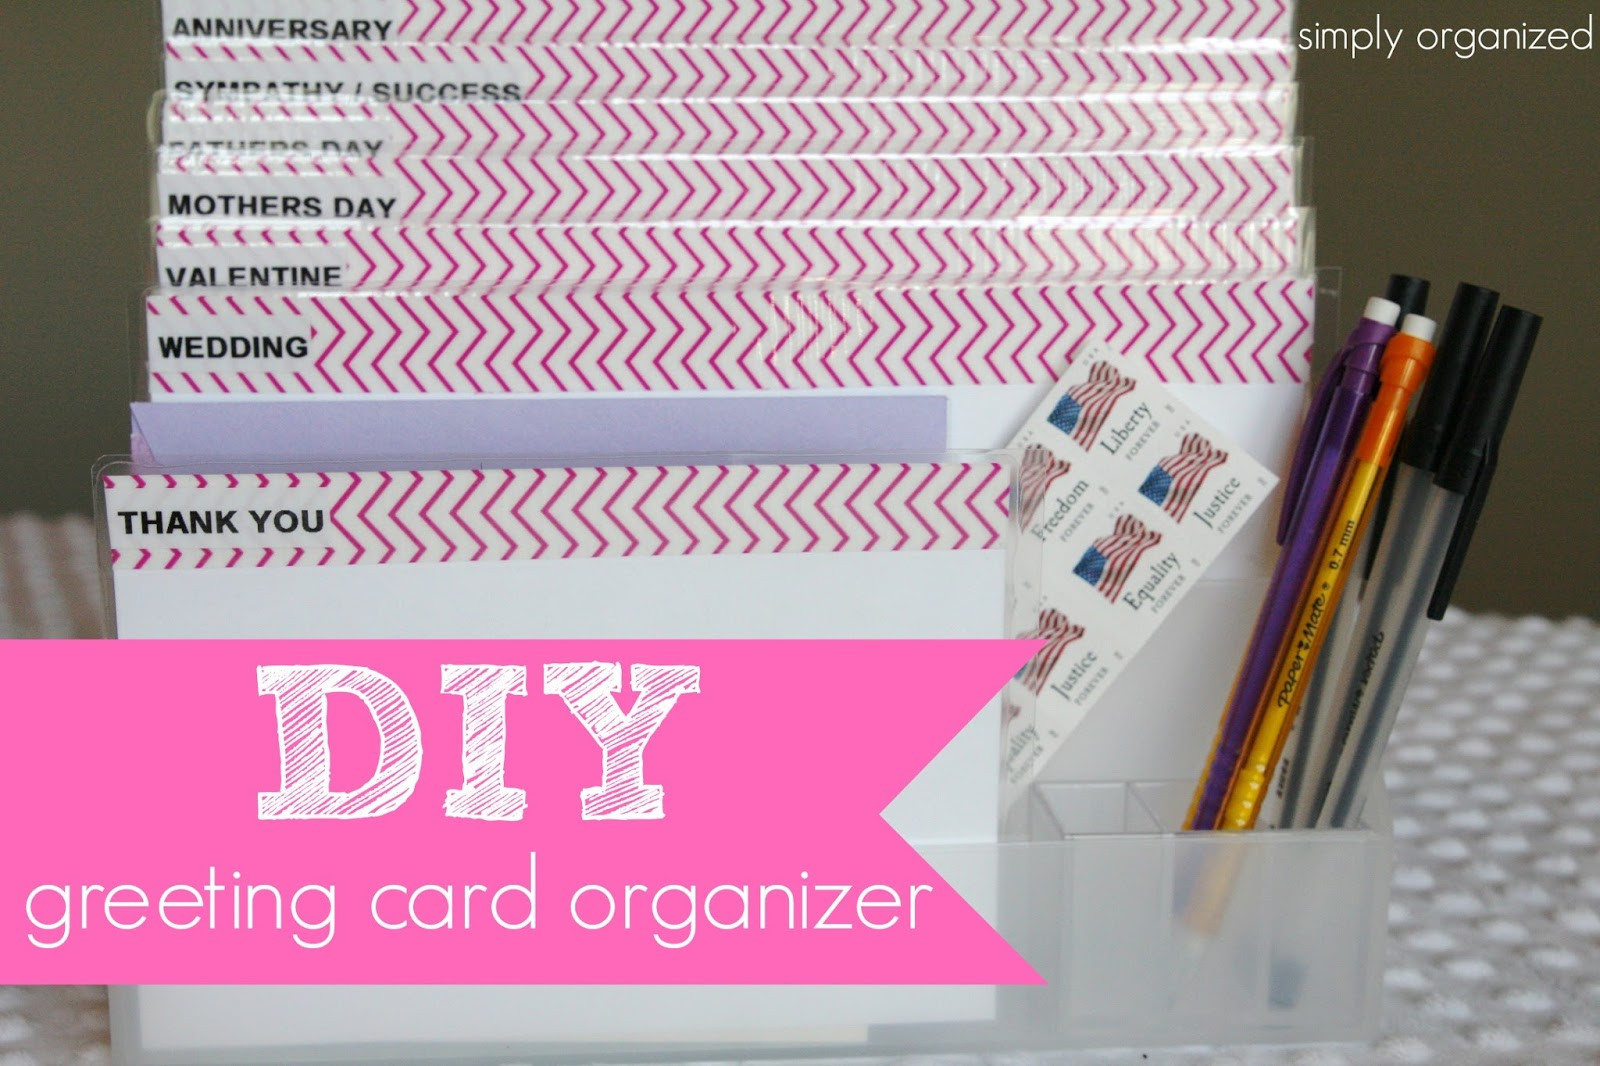 DIY Greeting Card Organizer
 DIY greeting card organizer simply organized